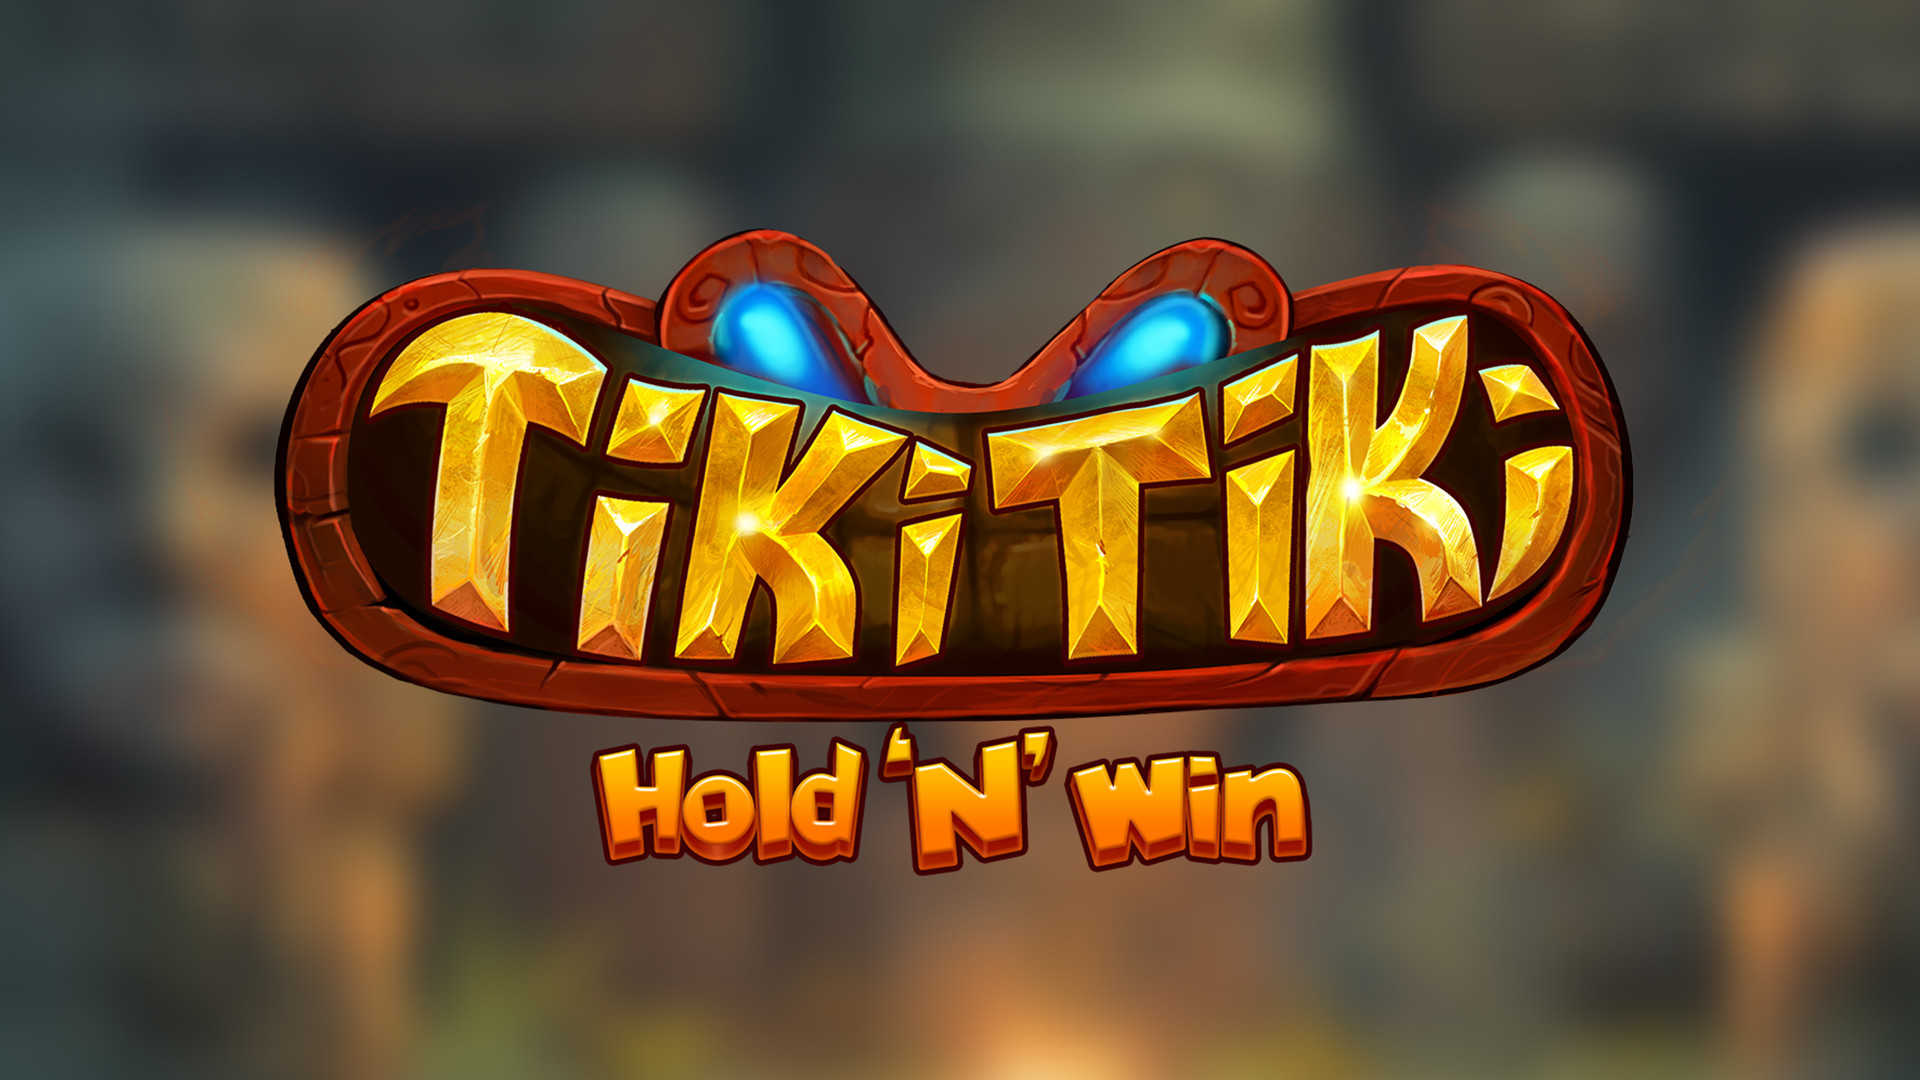 Tiki Tiki Hold 'N' Win